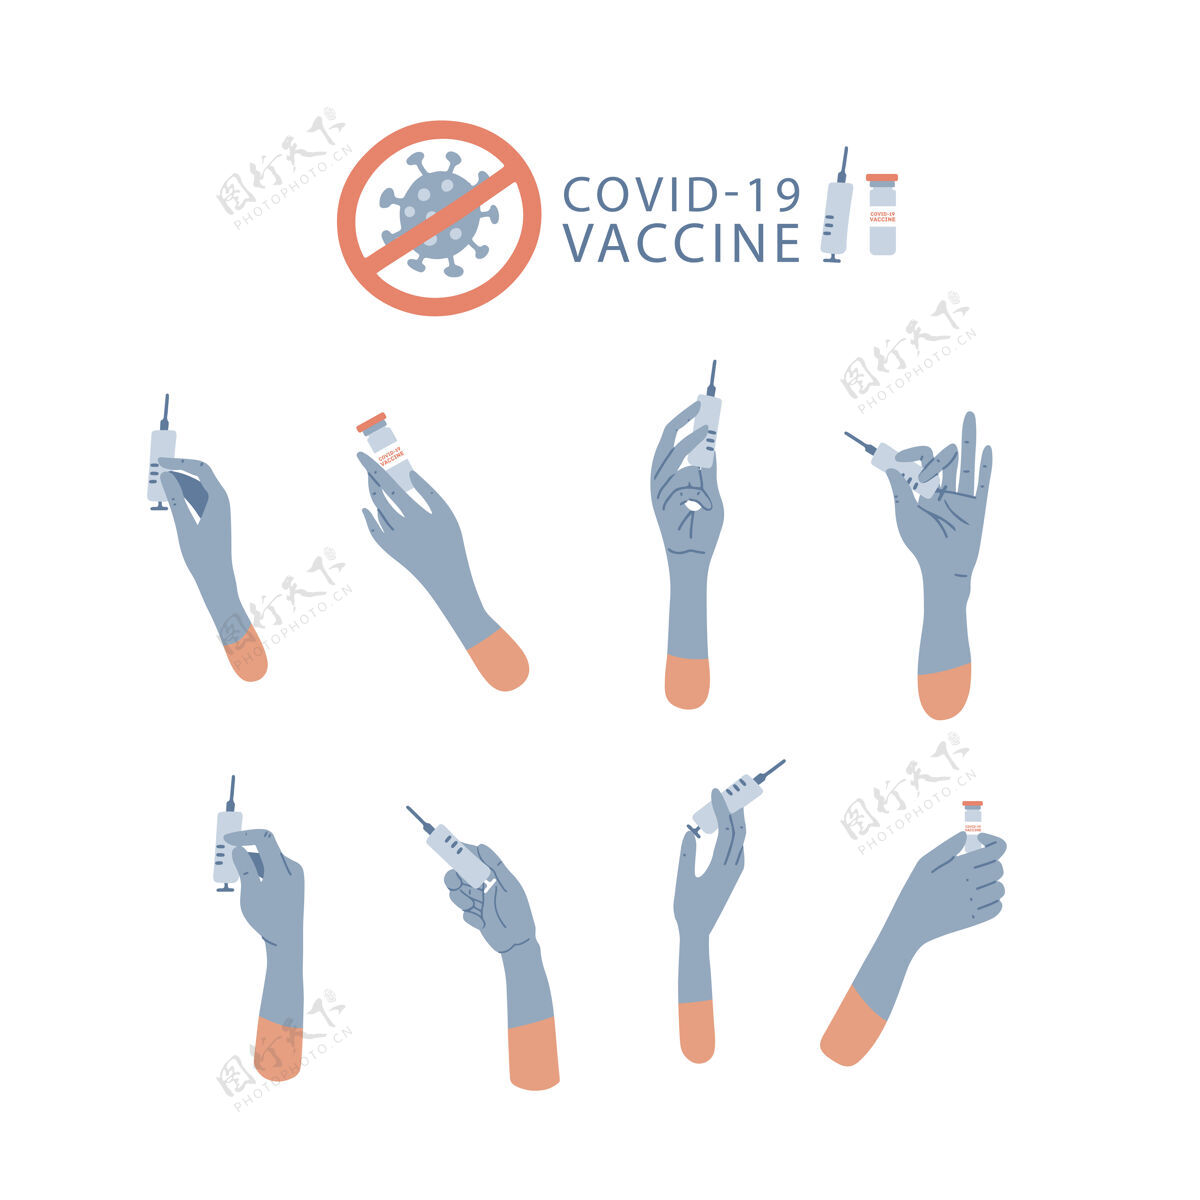 医学大套 医生手拿注射器和装有疫苗或疫苗的安瓿药手戴着手套注射.covid-19疫苗接种预防性概念药物 治疗医学注射药物